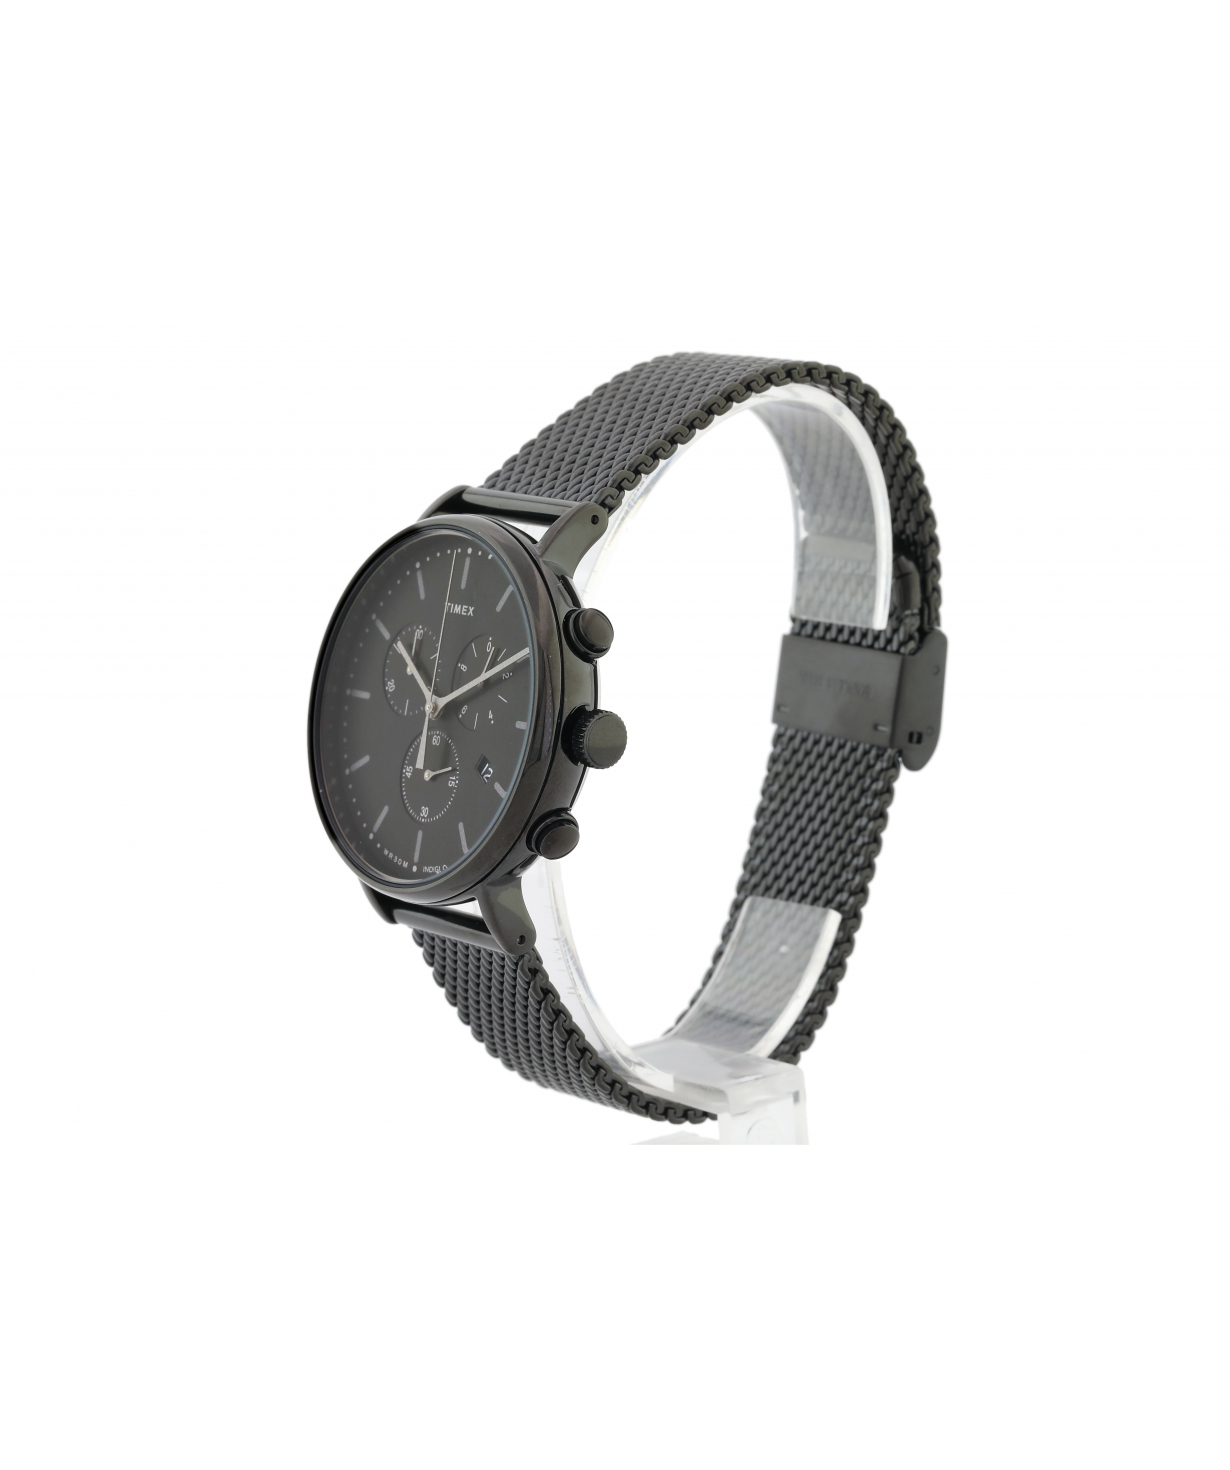 Wristwatch «Timex» TW2R27300